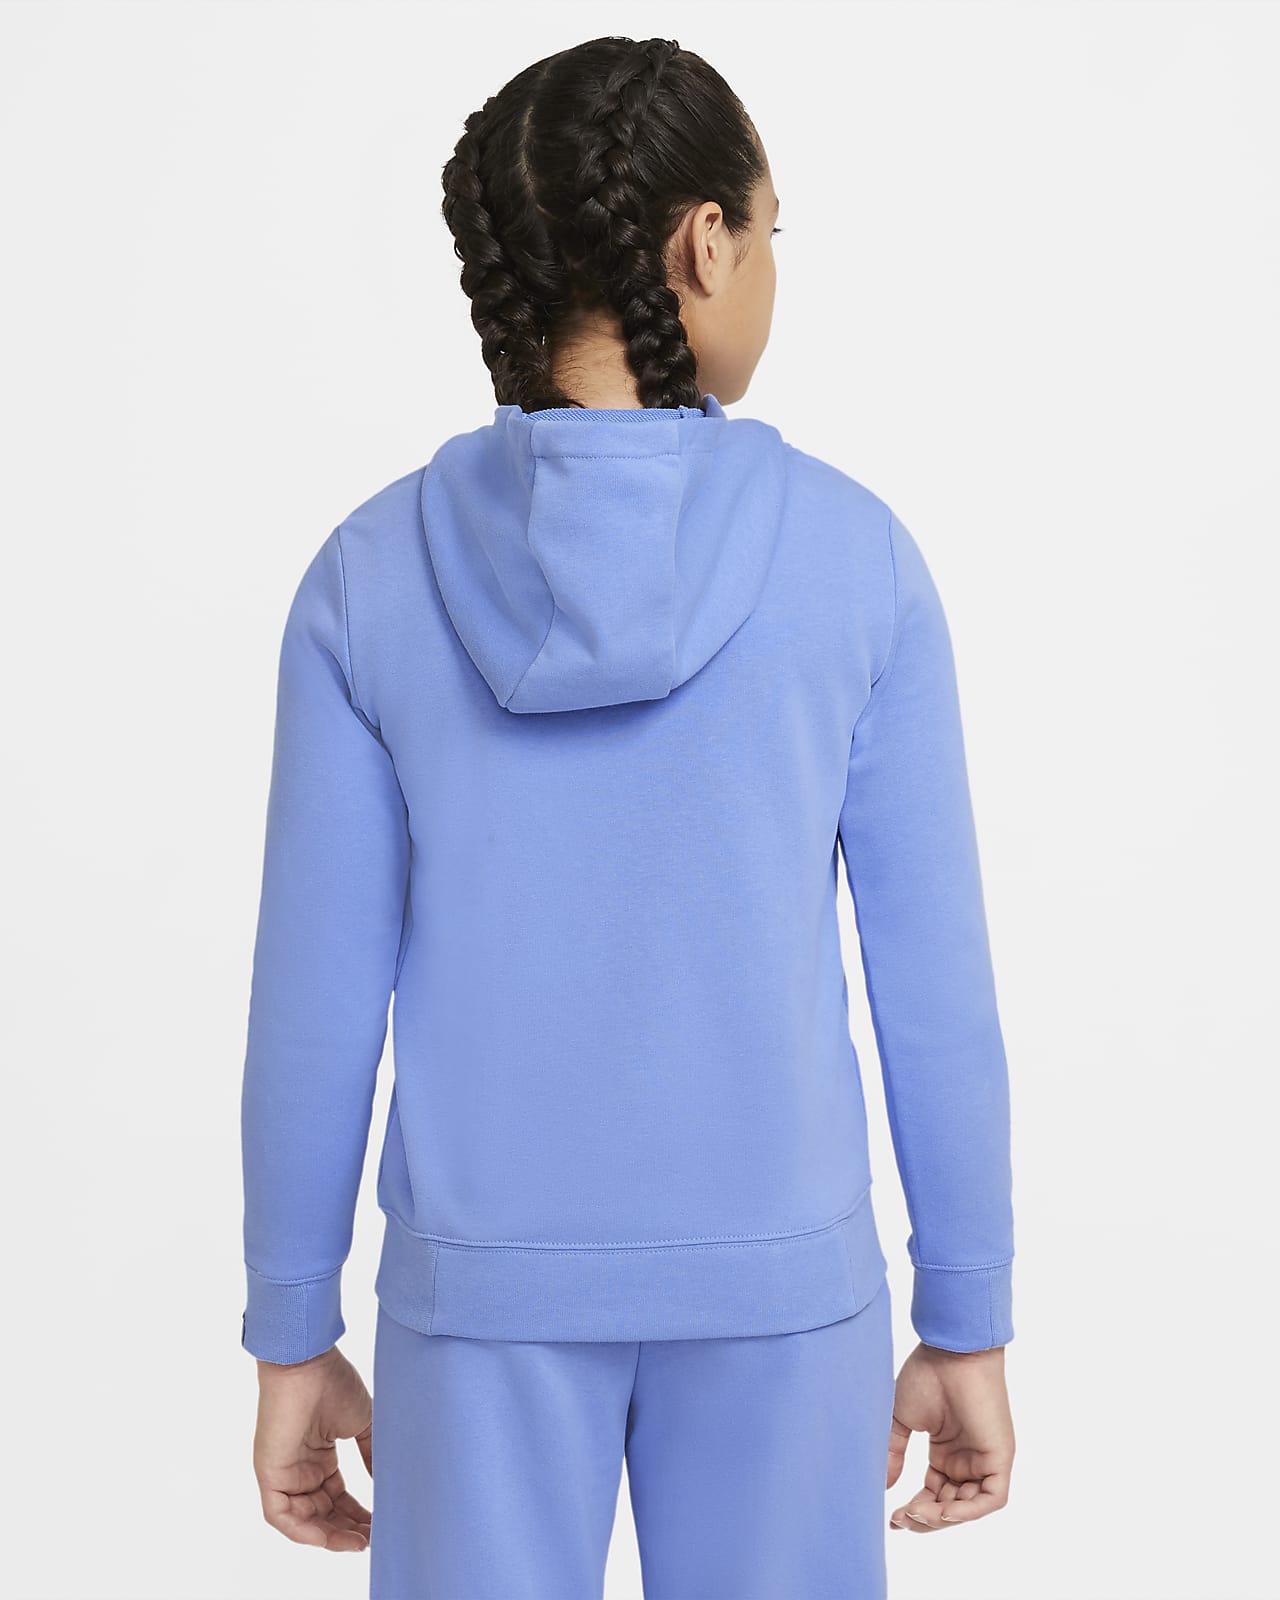 nike pacific blue hoodie